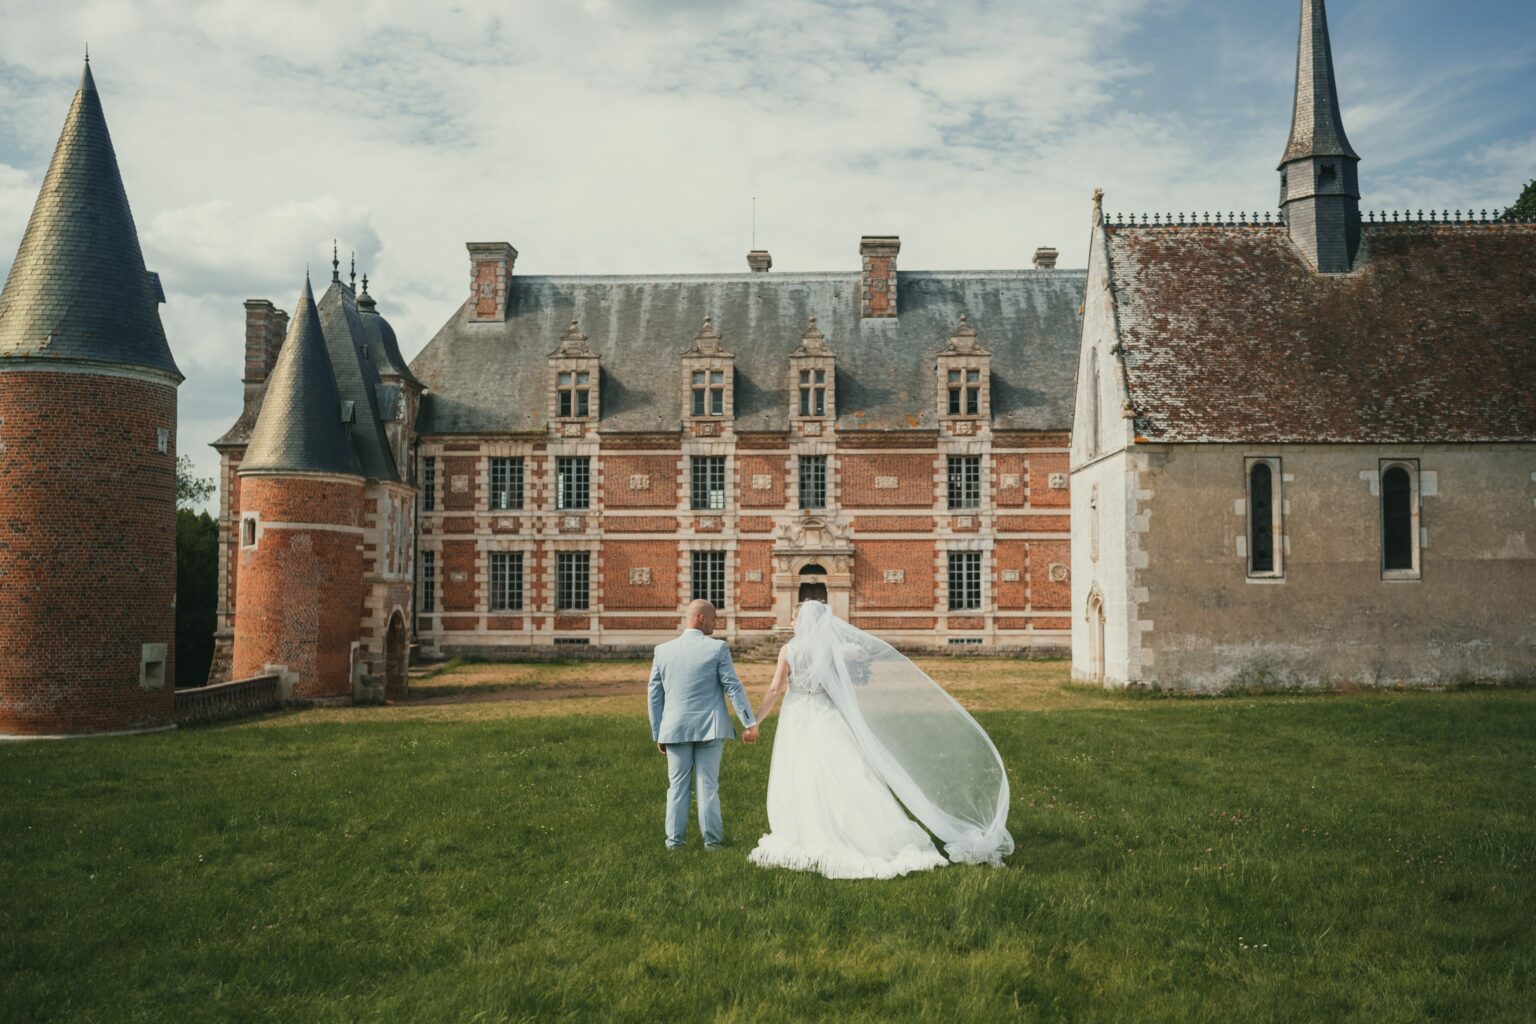 Le mariage de Sonia et Tanguy au domaine de gouville – par Alain Leprevost photographe vidéaste en Normandie